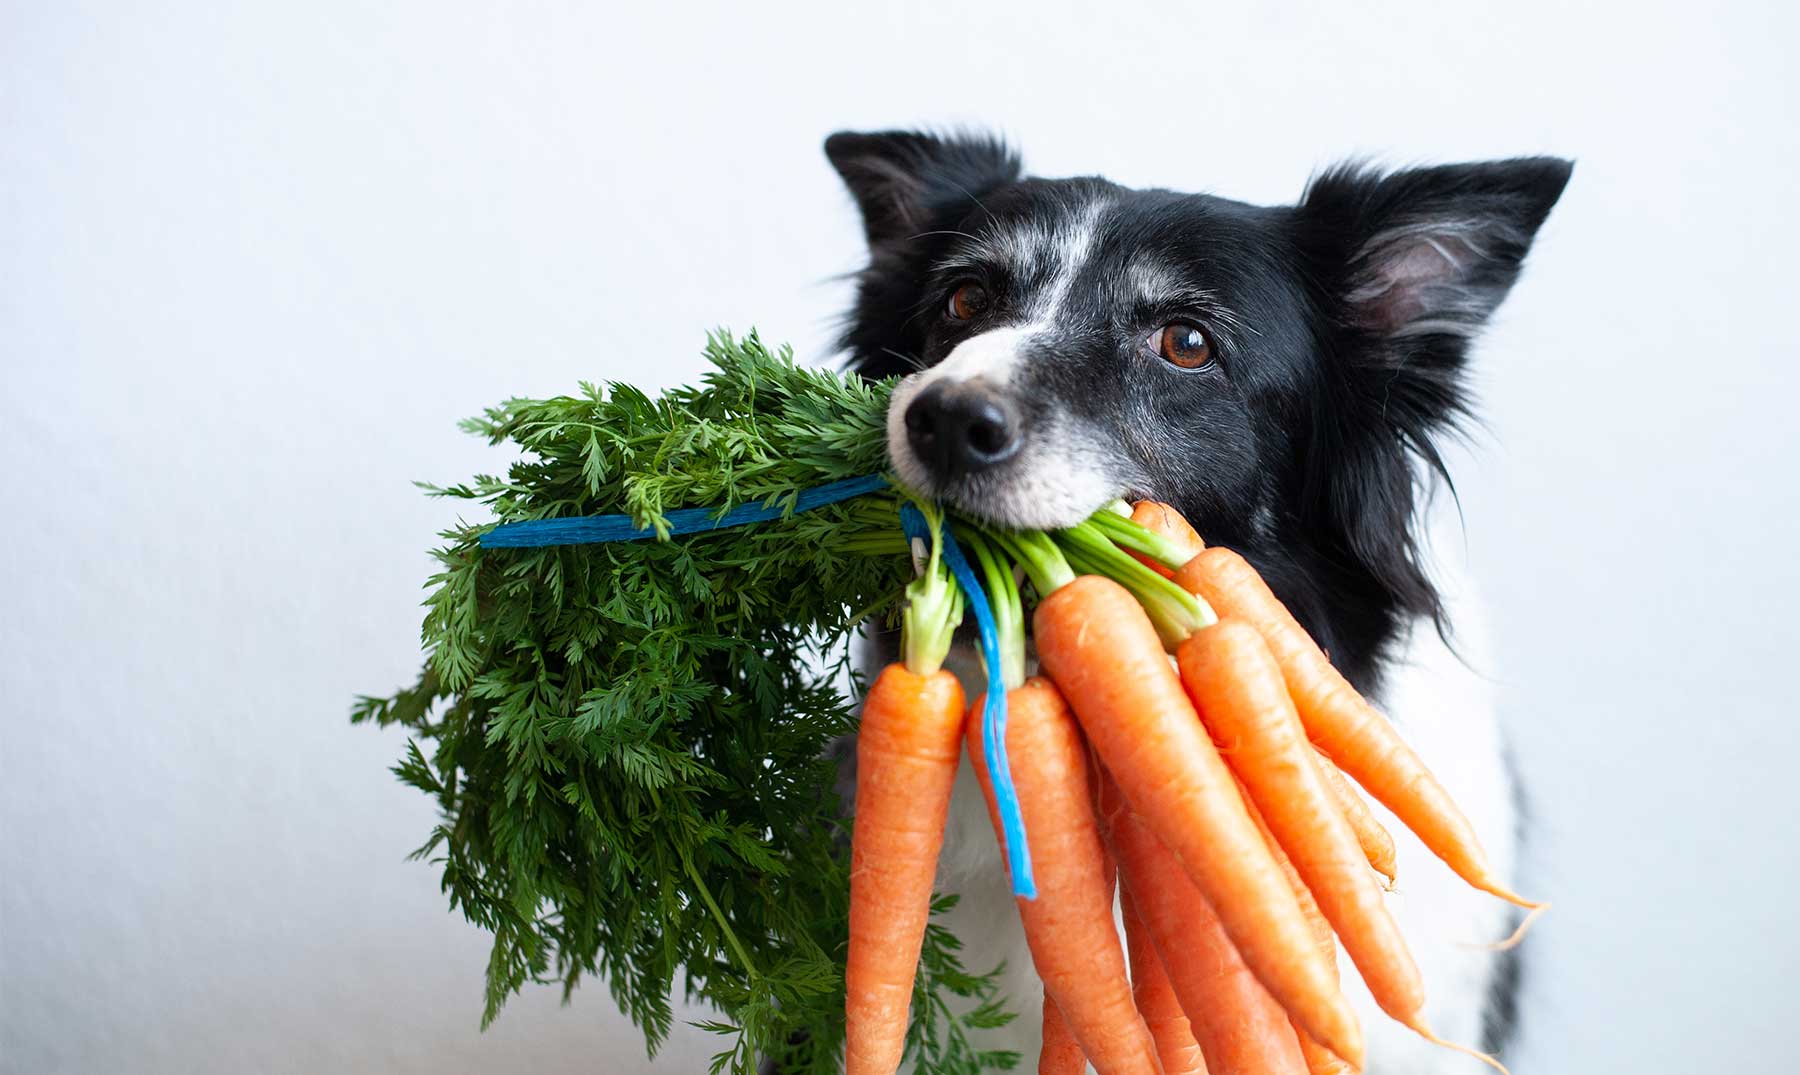 Crudo Fuente Centro comercial Los perros pueden comer zanahoria? - Supercurioso